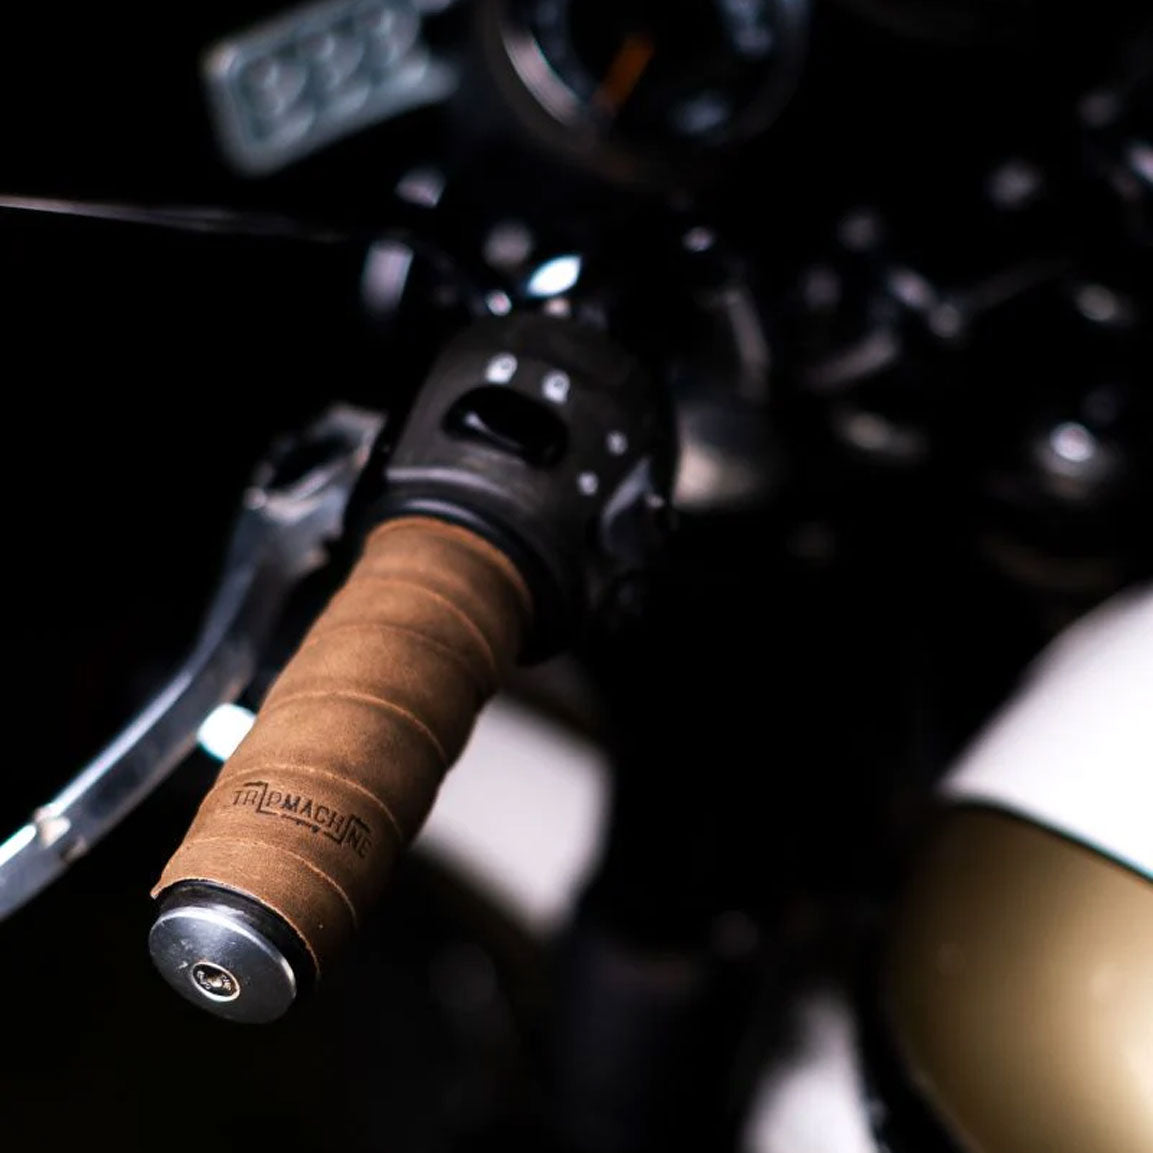 Trip Machine Grips Wrap Motorrad-Griffband aus Leder - Tobacco Brown